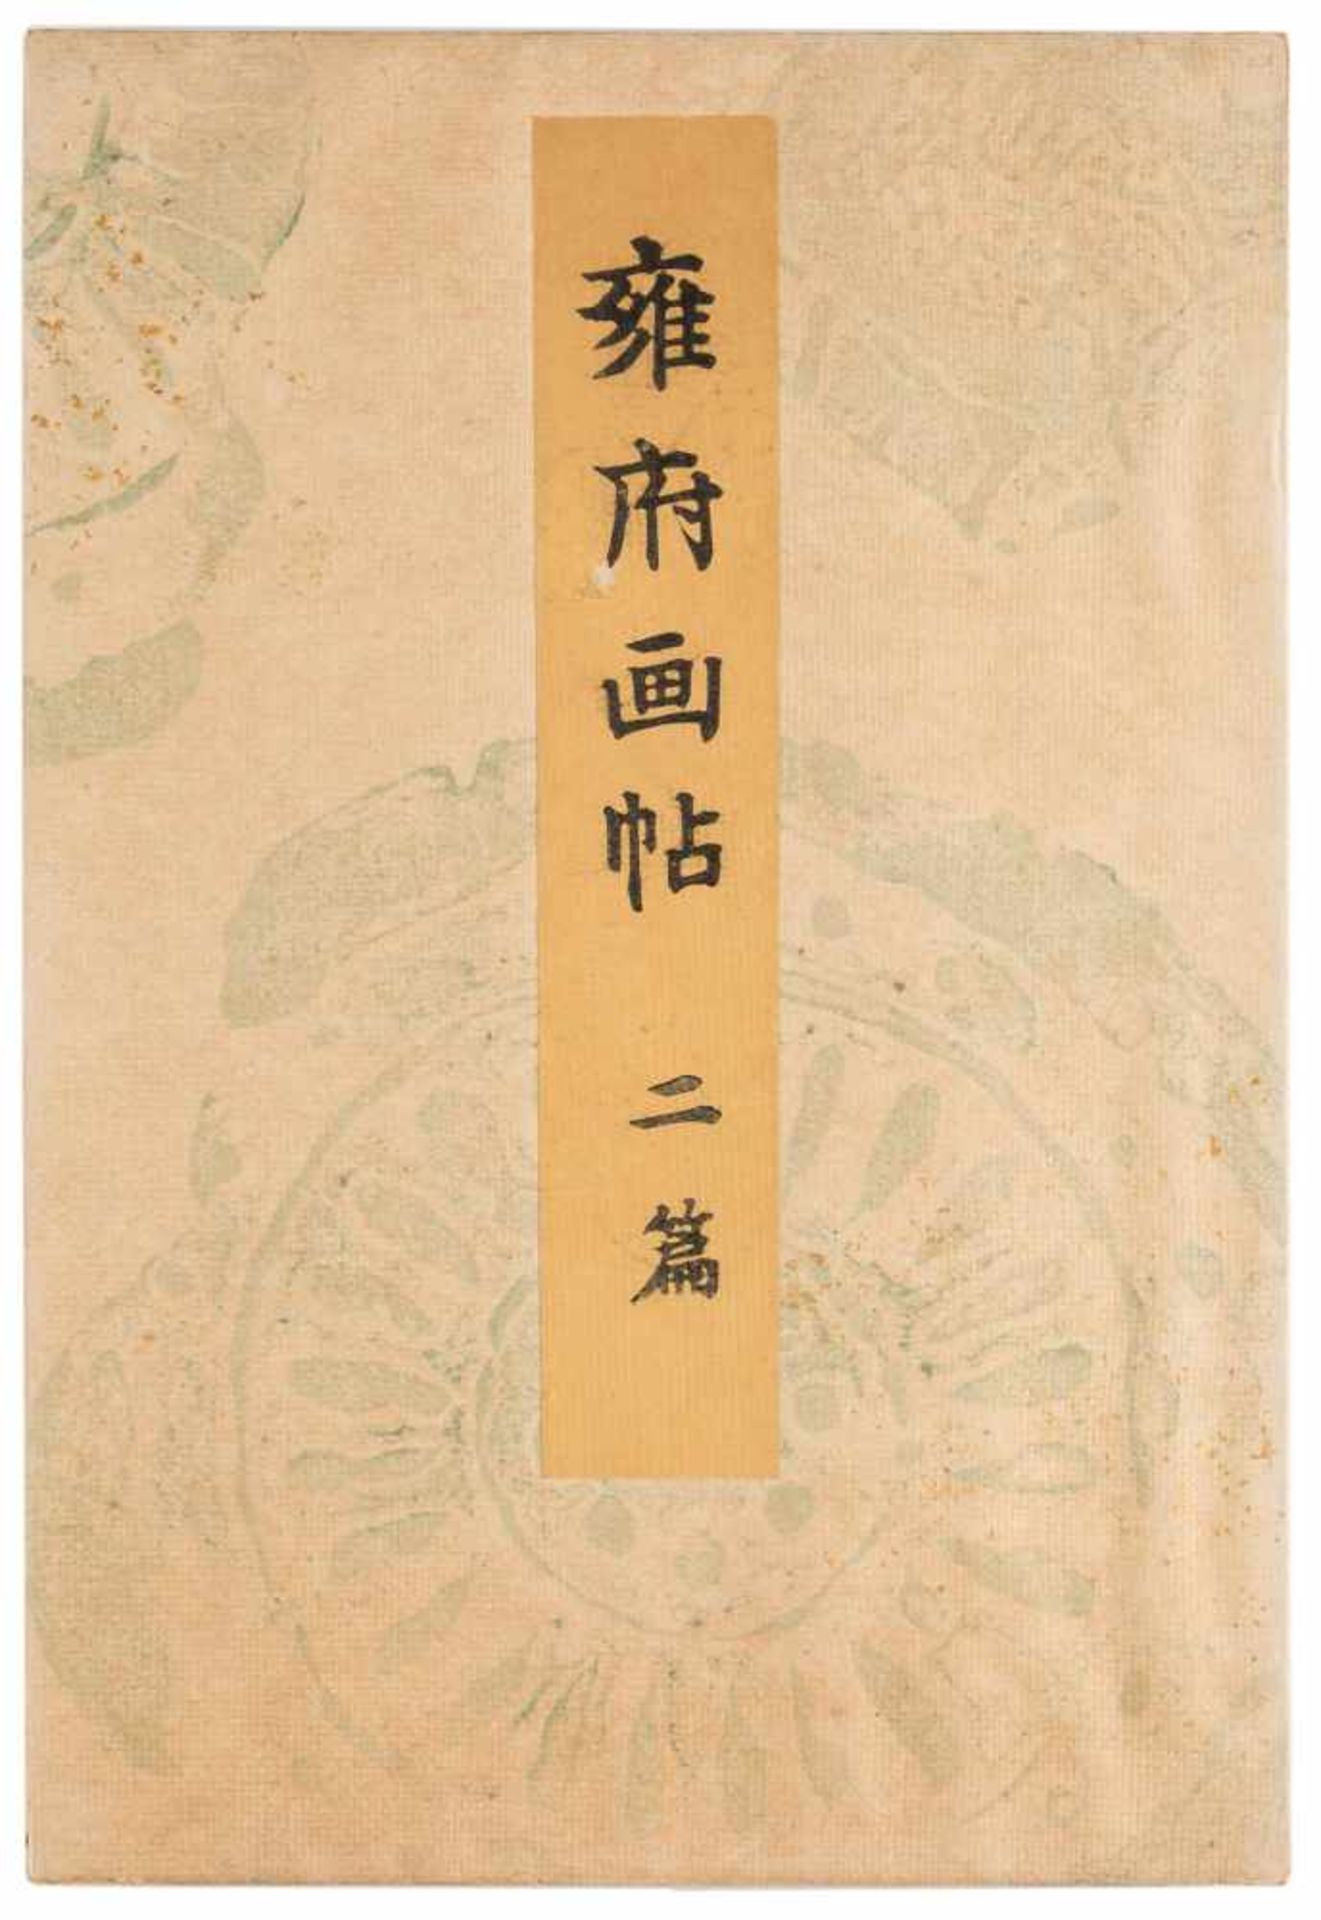 DREI BÜCHER MIT LANDSCHAFTLICHEN SZENEN Japan, 1895 Druck auf Papier. Ca. 23,5 cm x 16 cm. - Bild 4 aus 7